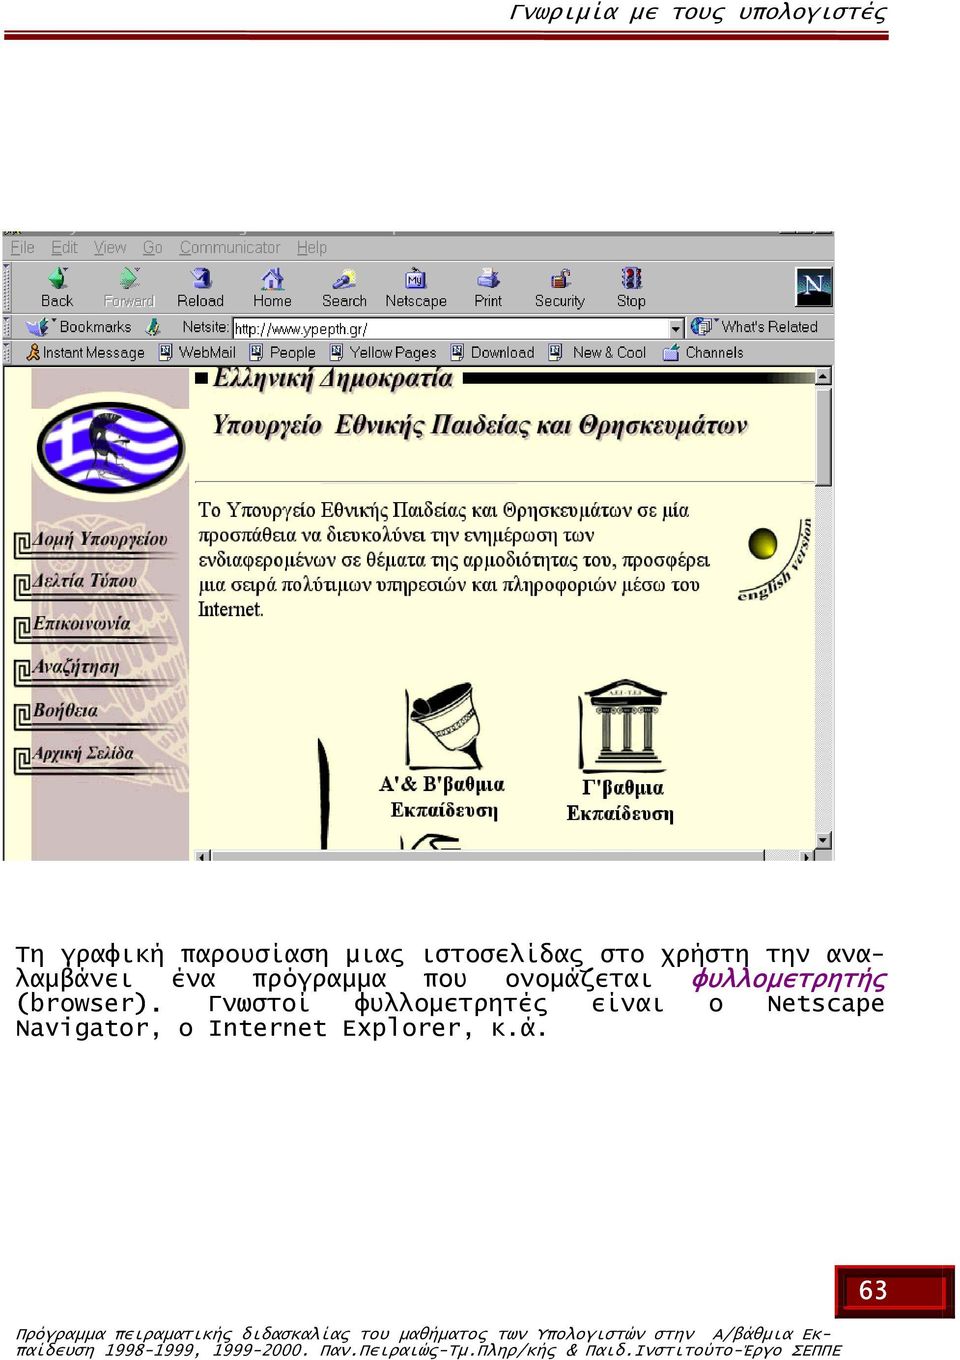 Γνωστοί φυλλοµετρητές είναι ο Netscape Navigator, o Internet Explorer, κ.ά.